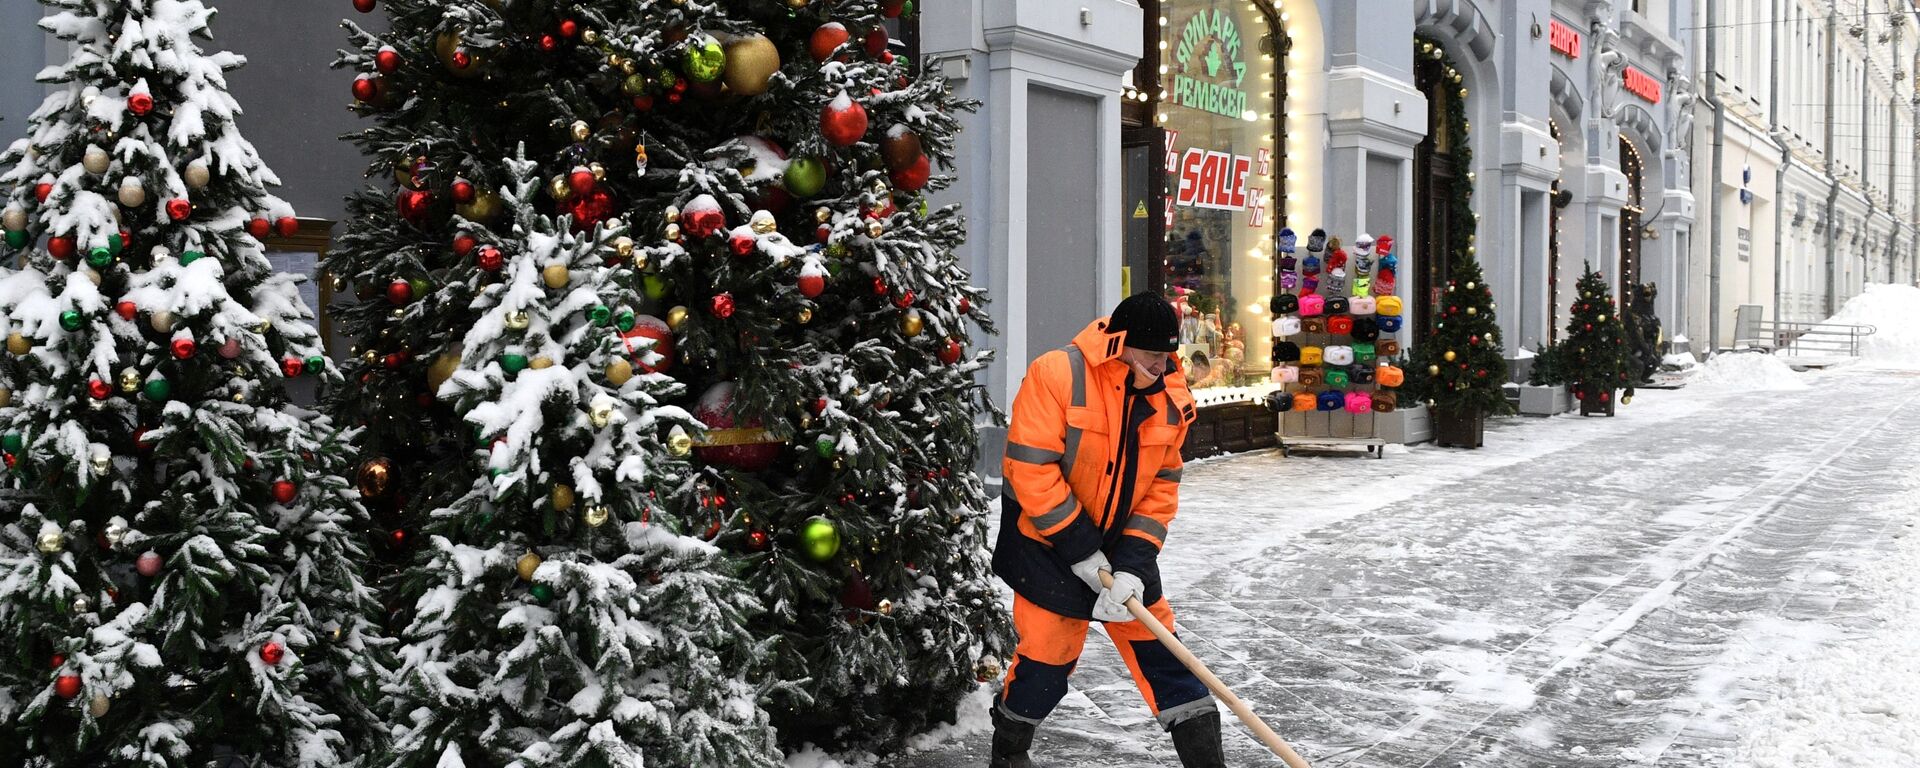 Сотрудник коммунальных услуг убирает снег на улице Москвы - Sputnik Таджикистан, 1920, 17.01.2021